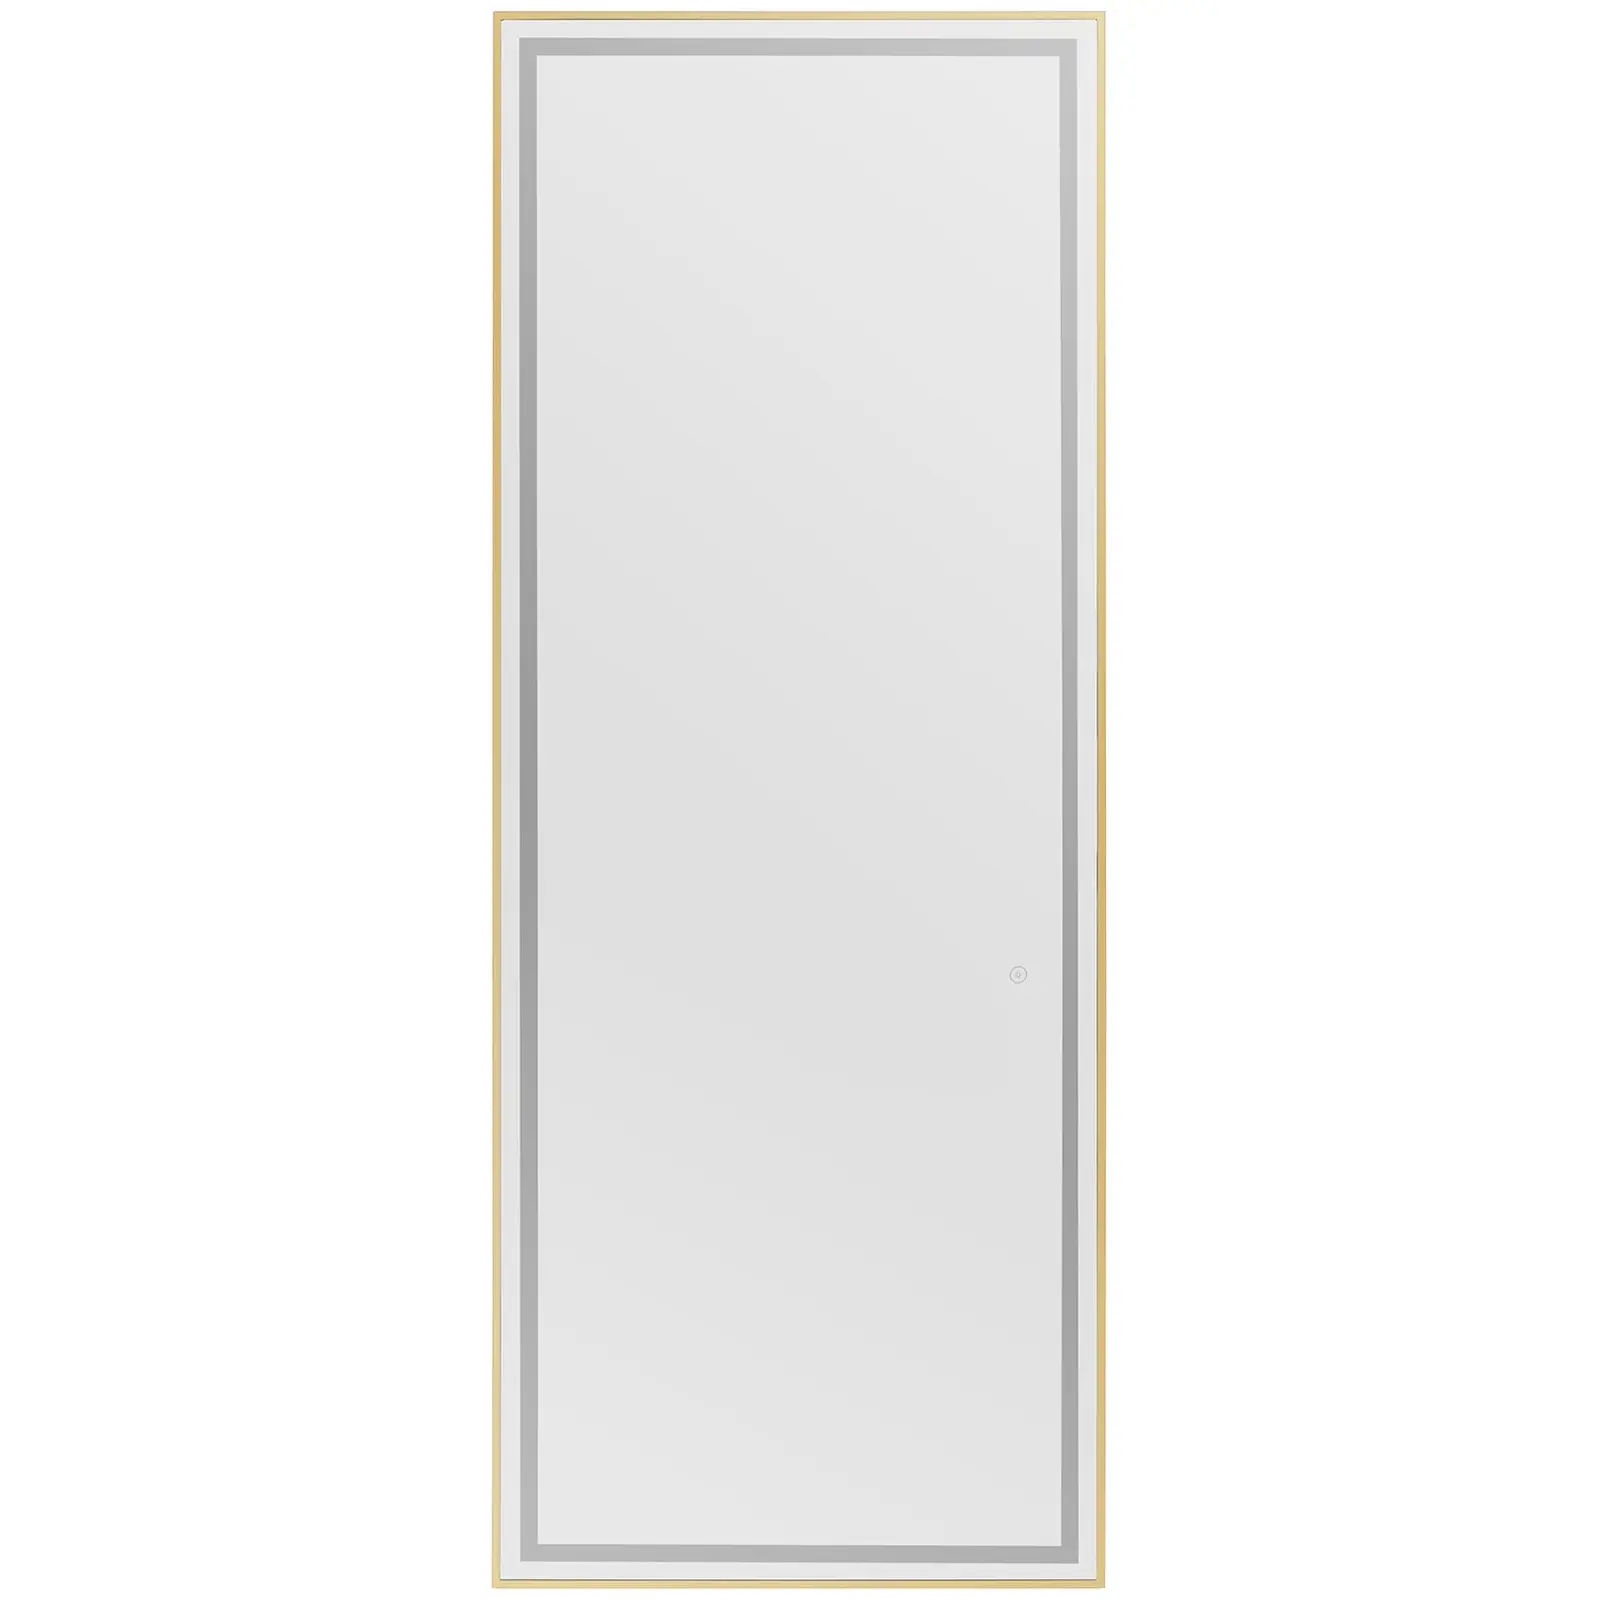 Kadernícke zrkadlo - LED osvetlenie - extra ploché - obdĺžnikové -70 X4 X180 cm